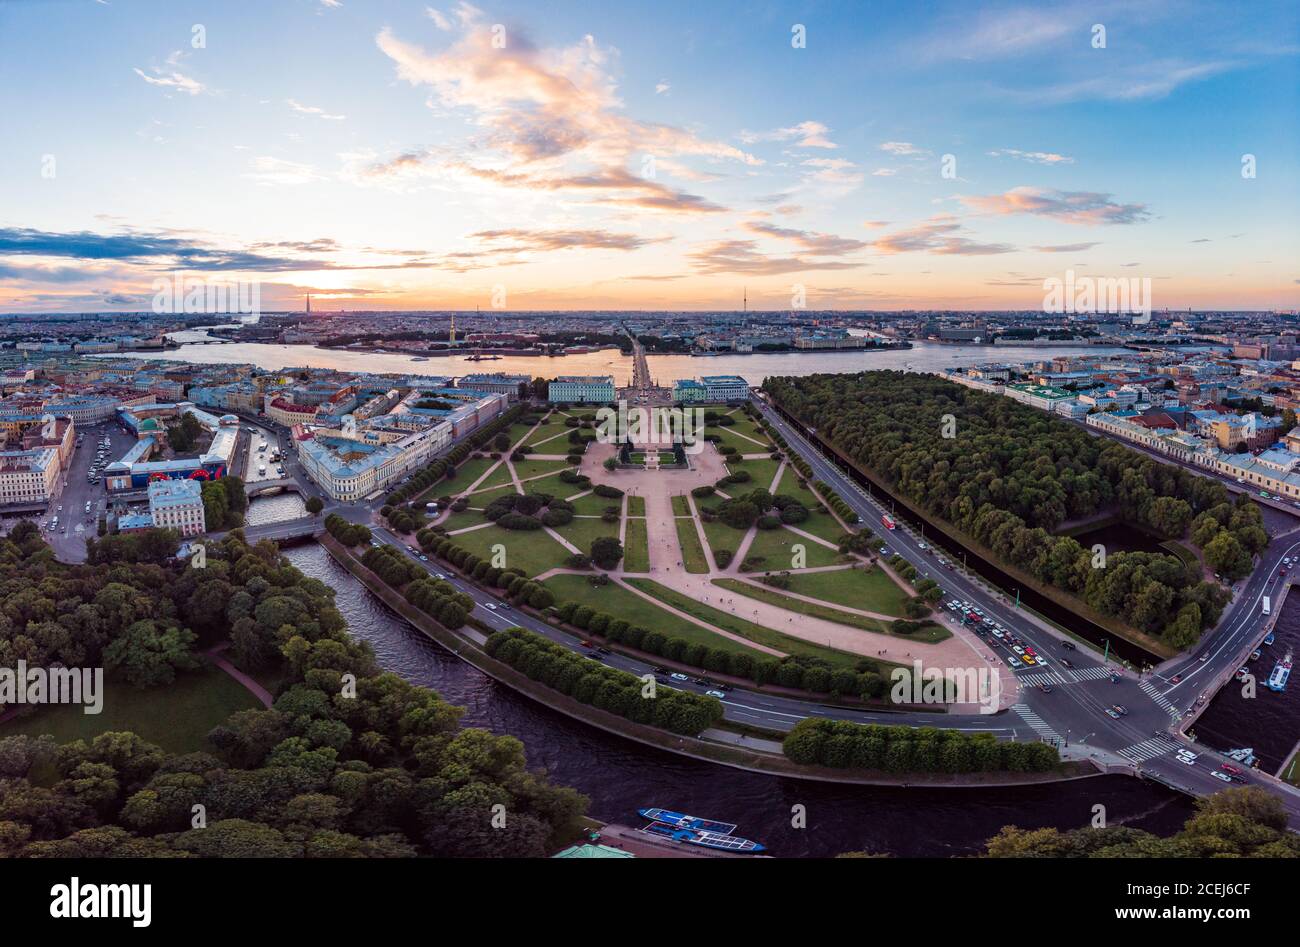 05 août 2018, SAINT-PÉTERSBOURG Russie: Belle vue de dessus du centre-ville historique de Saint-Pétersbourg et le champ de Mars, jardin d'été et la Neva Banque D'Images